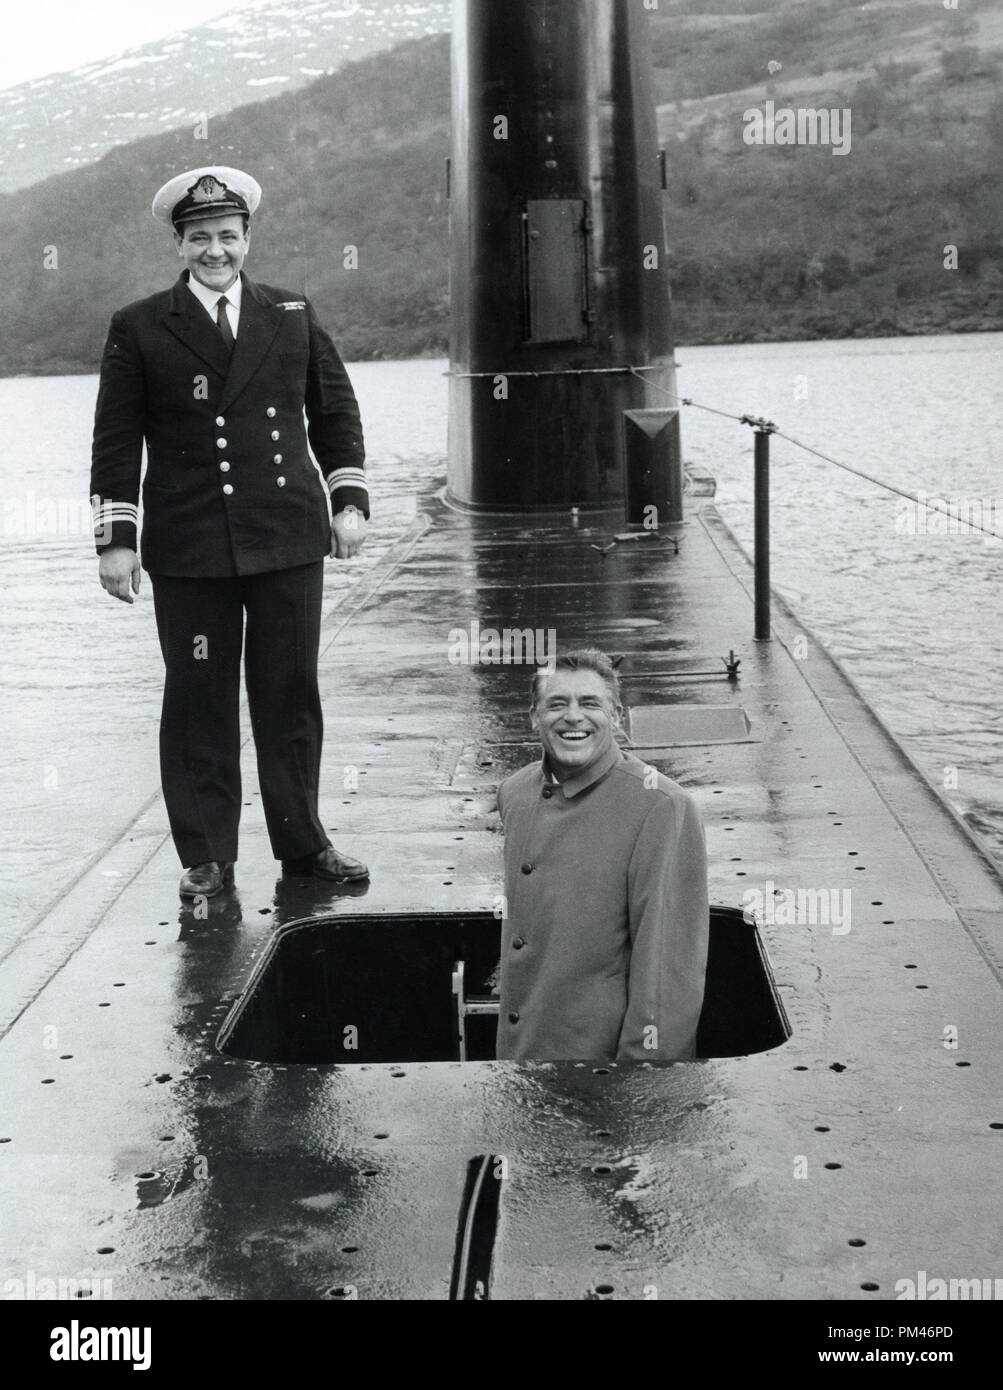 Cary Grant Besuche ein U-Boot an Finnant, Schottland, Loch Long Februar 2,1960. Datei Referenz Nr. 1084 004 THA © GFS/Hollywood Archiv - Alle Rechte vorbehalten. Stockfoto